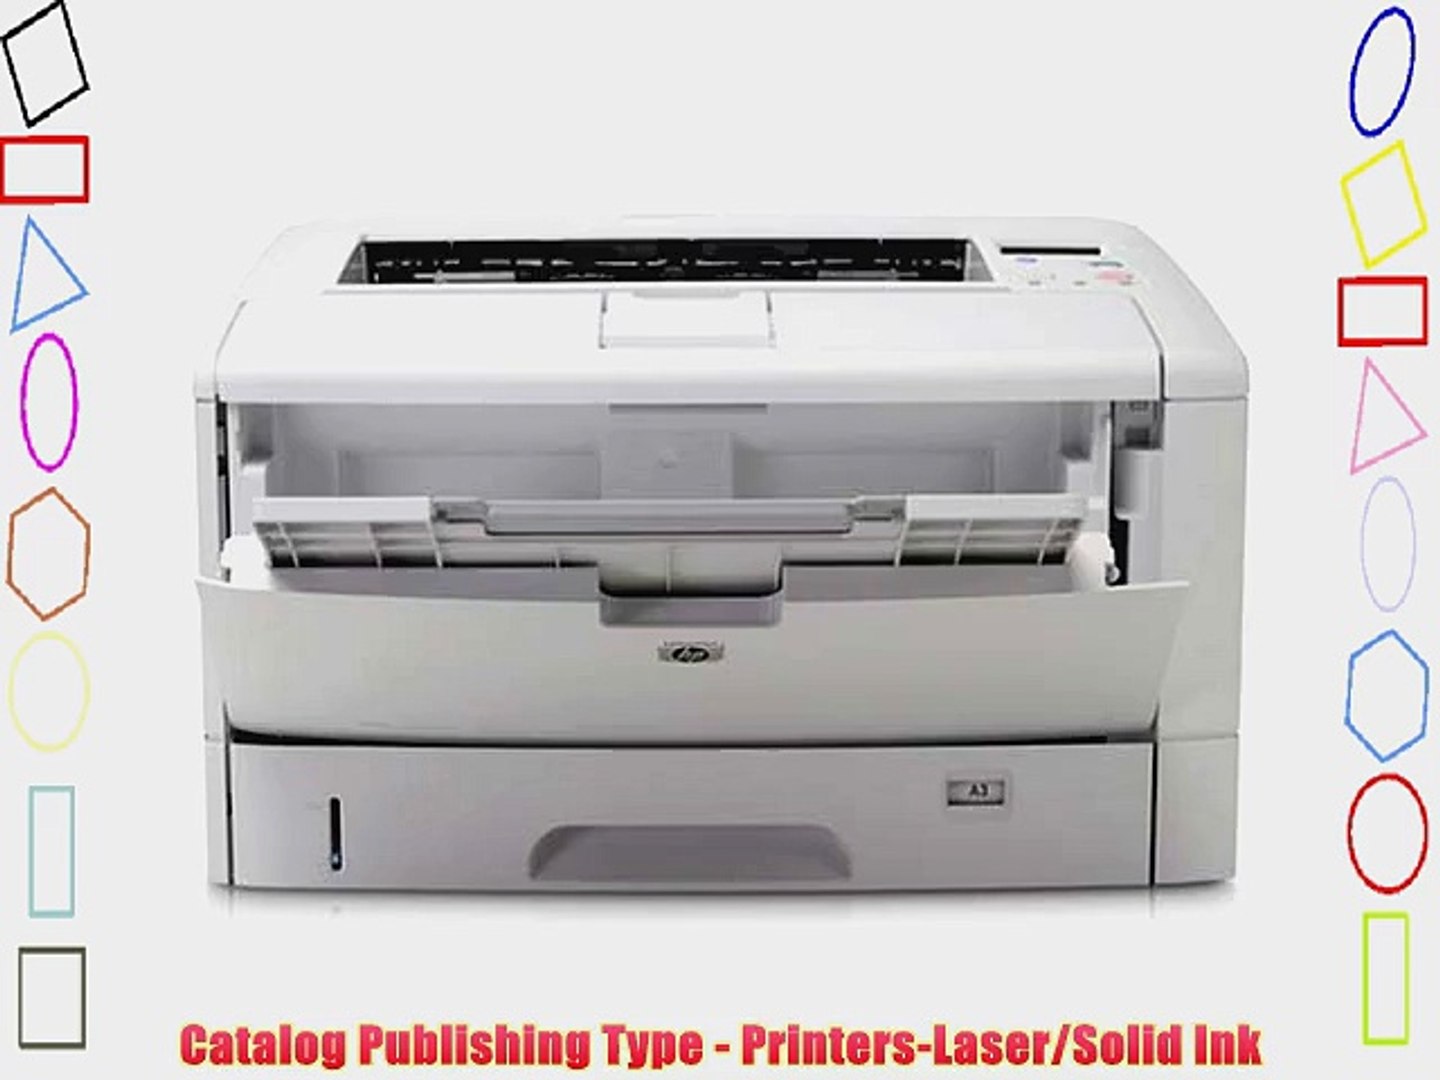 Лазерный принтер 3в1. Принтер   НР   LASERJET 5200.